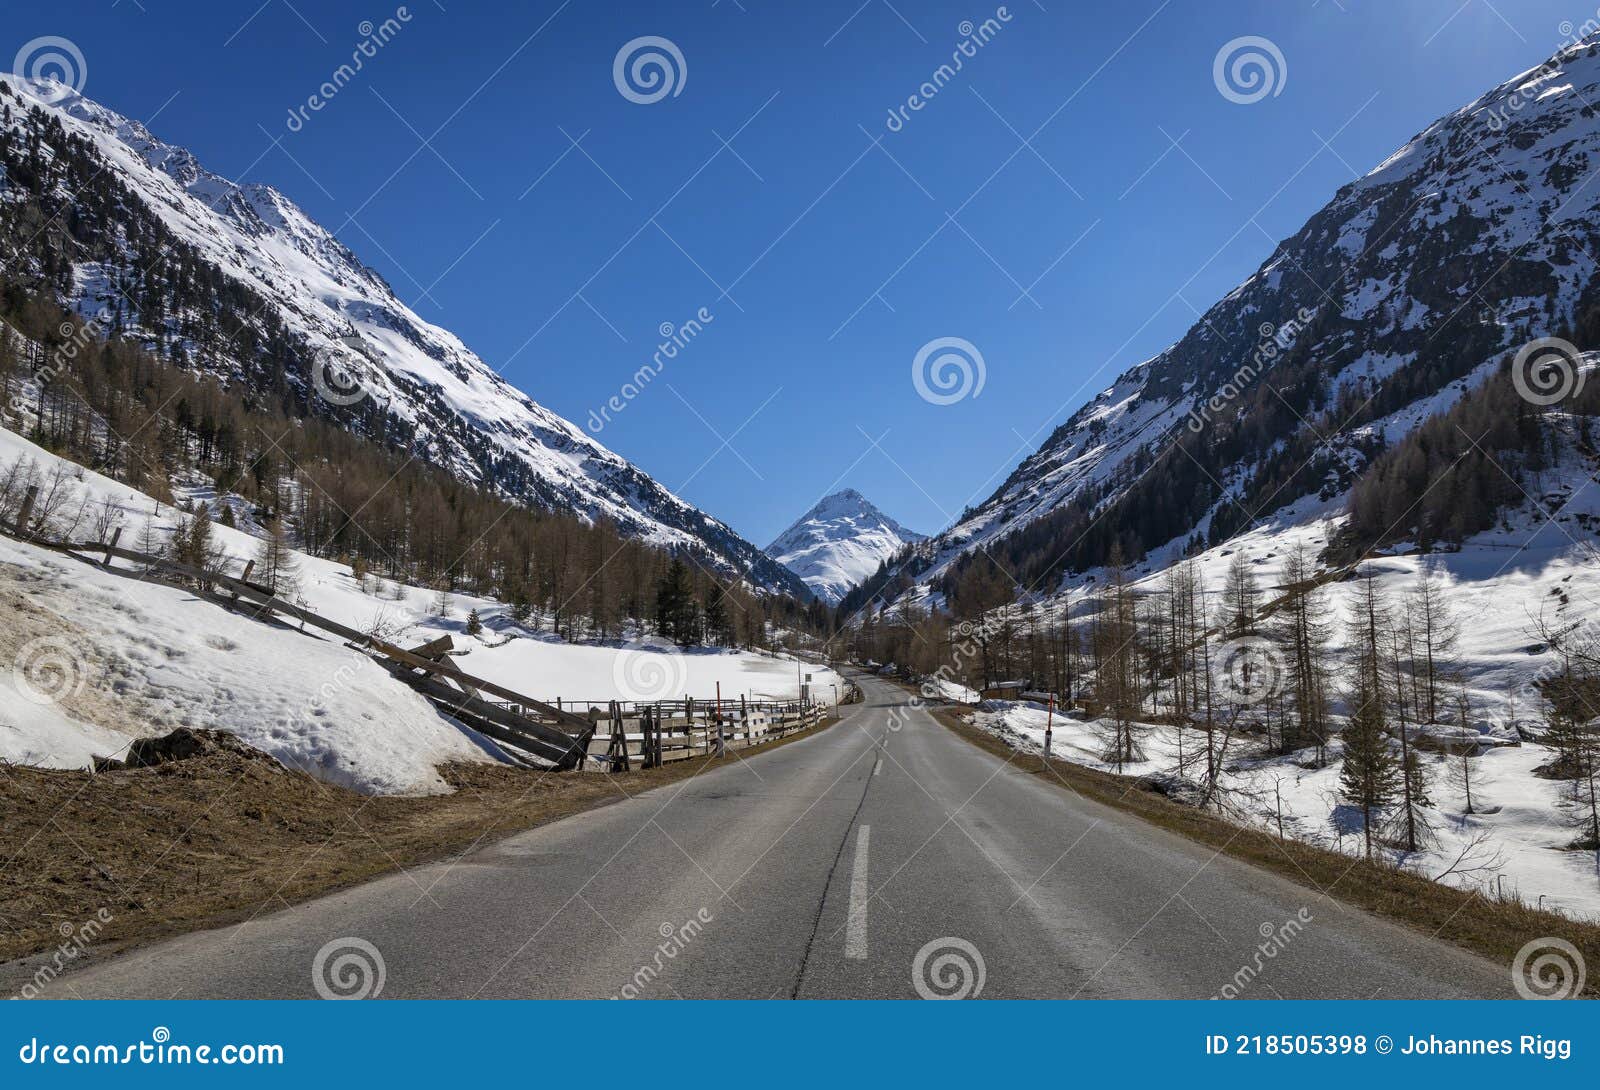 wonderful winter landscape in the venter valley in tirol, austria